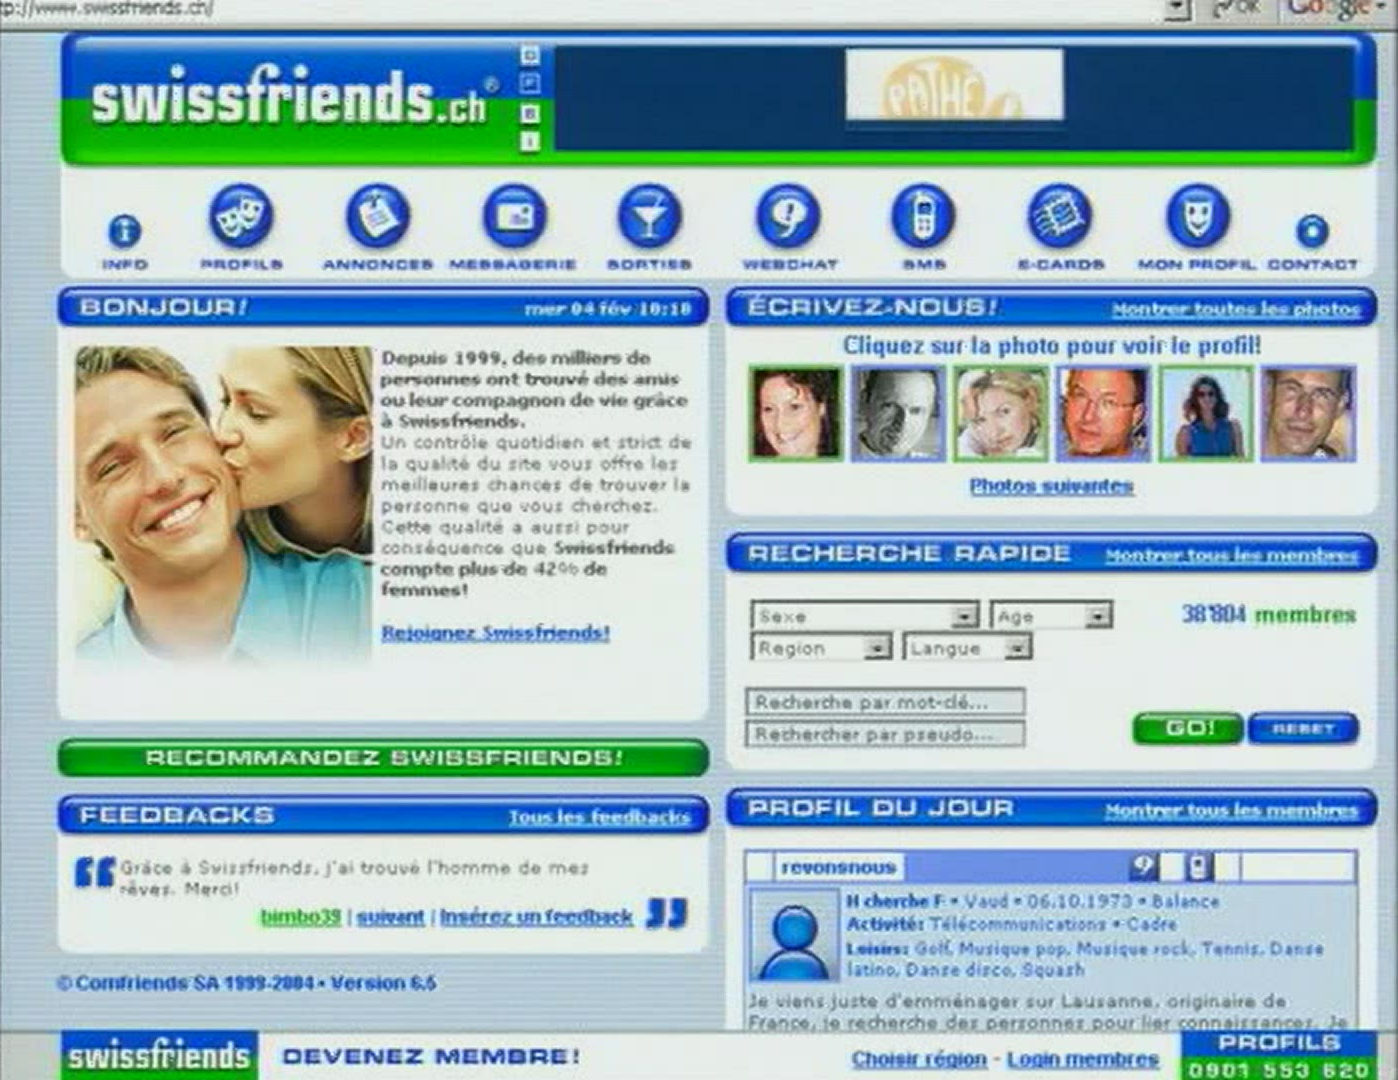 Le réseau swissfriends.ch [RTS]